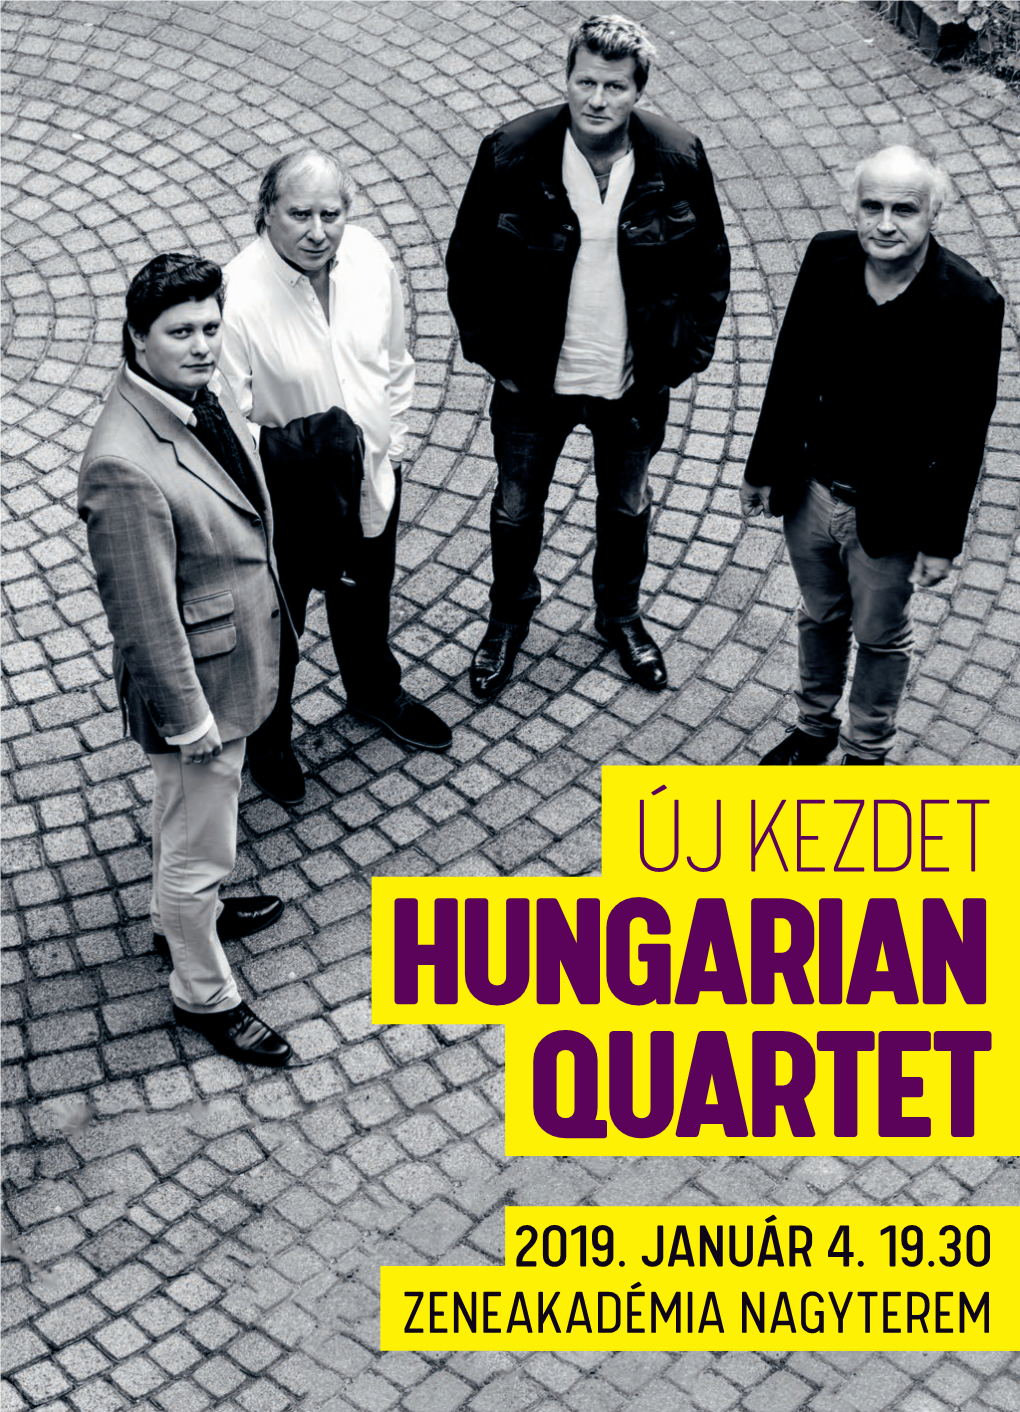 Hungarian Quartet 2019